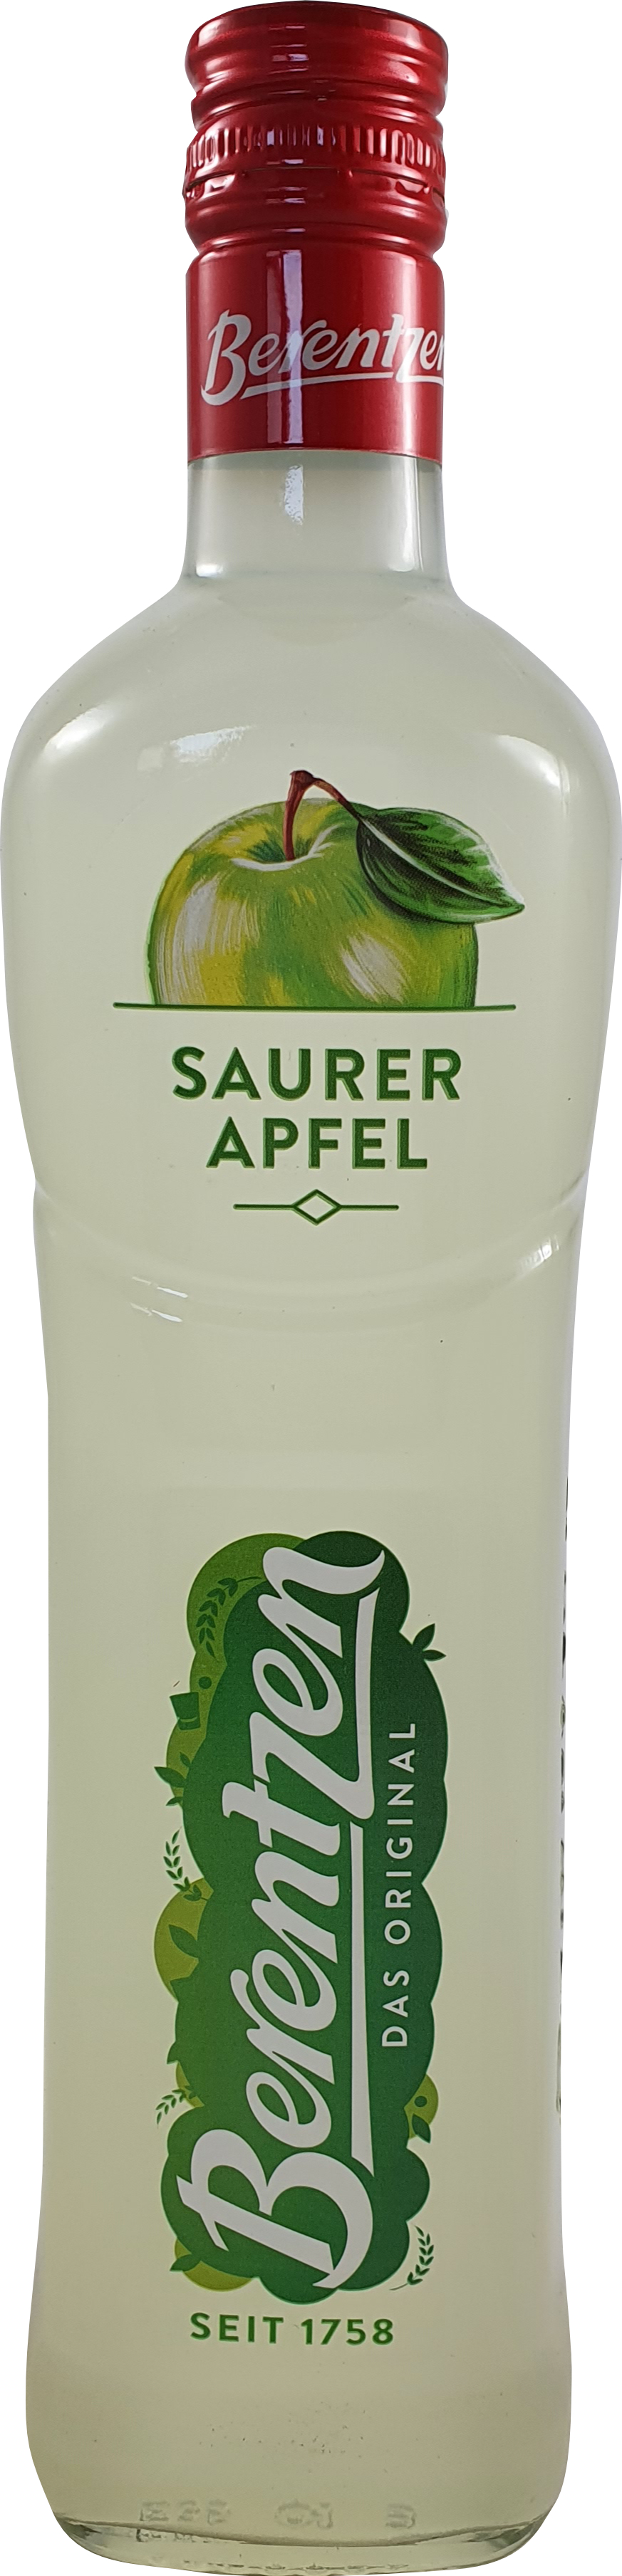 Berentzen Saurer Apfel 0,70L